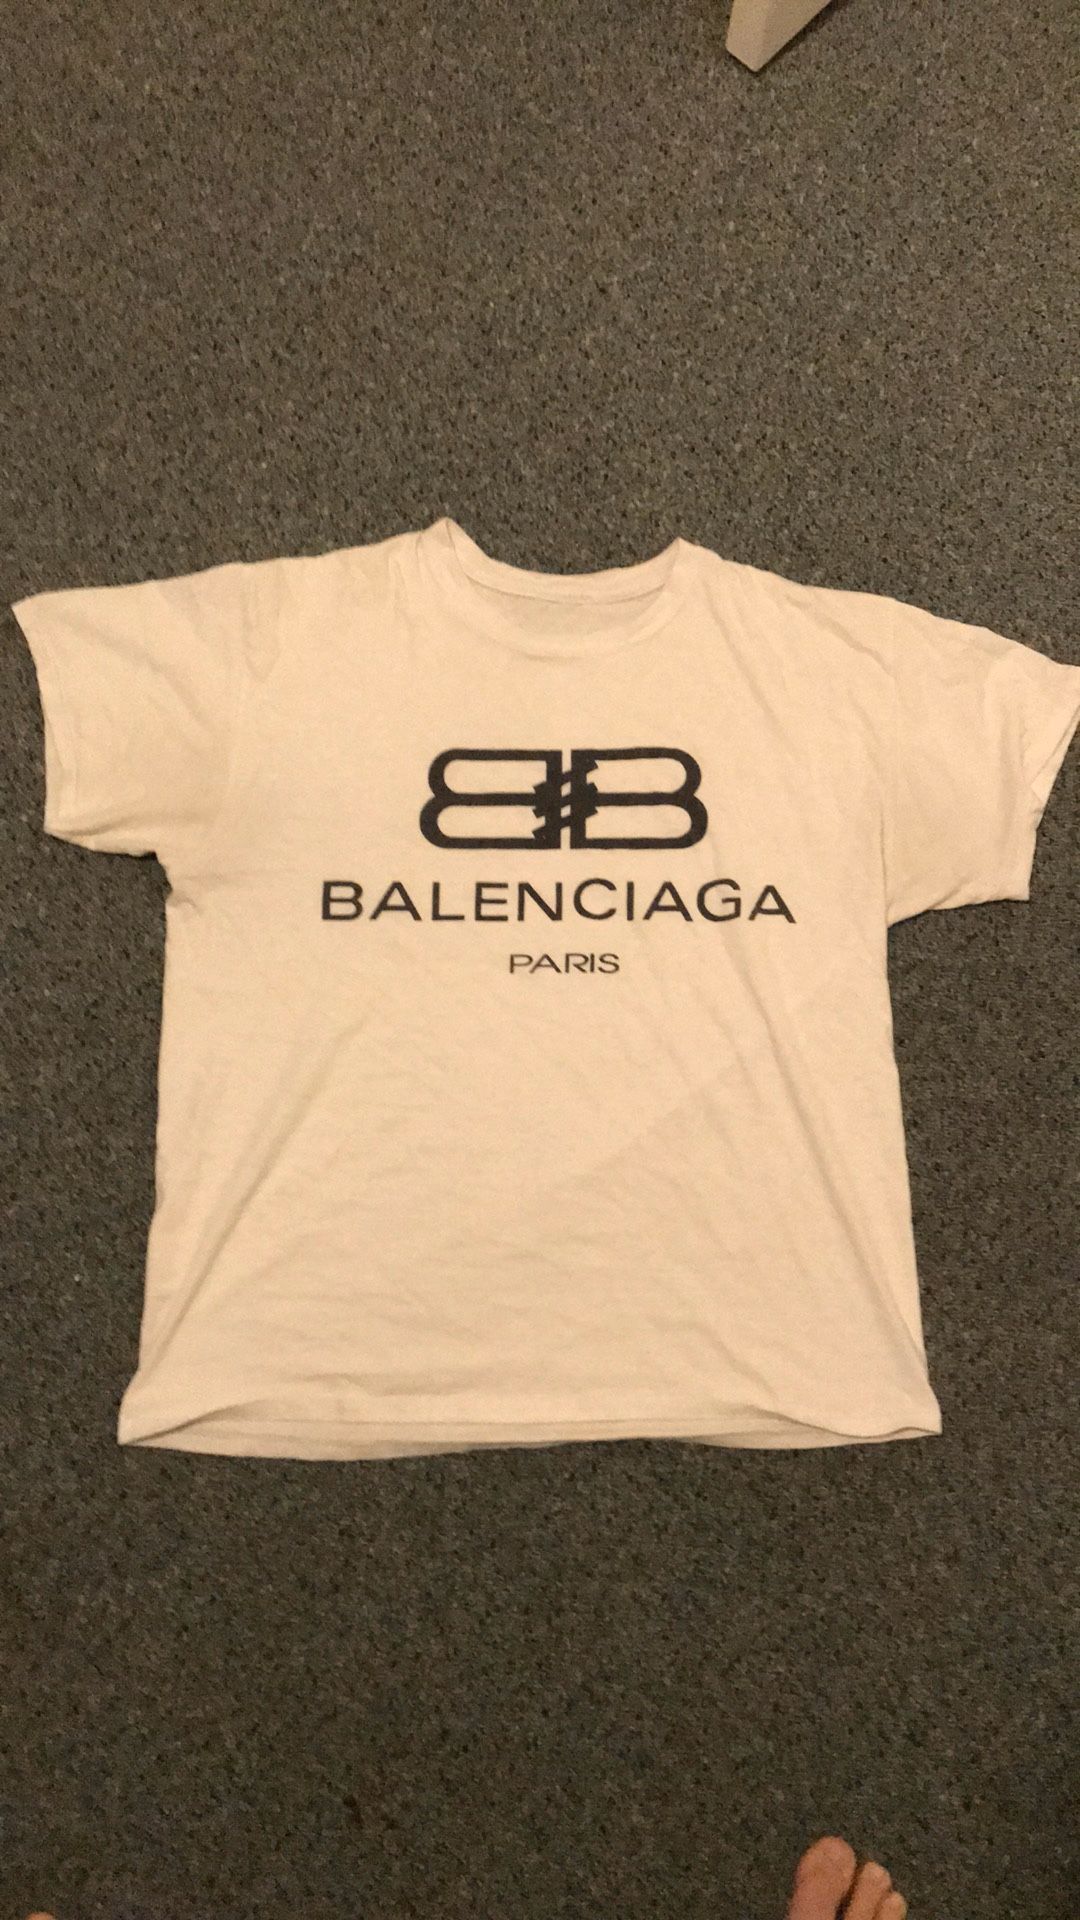 Balenciaga men’s shirt